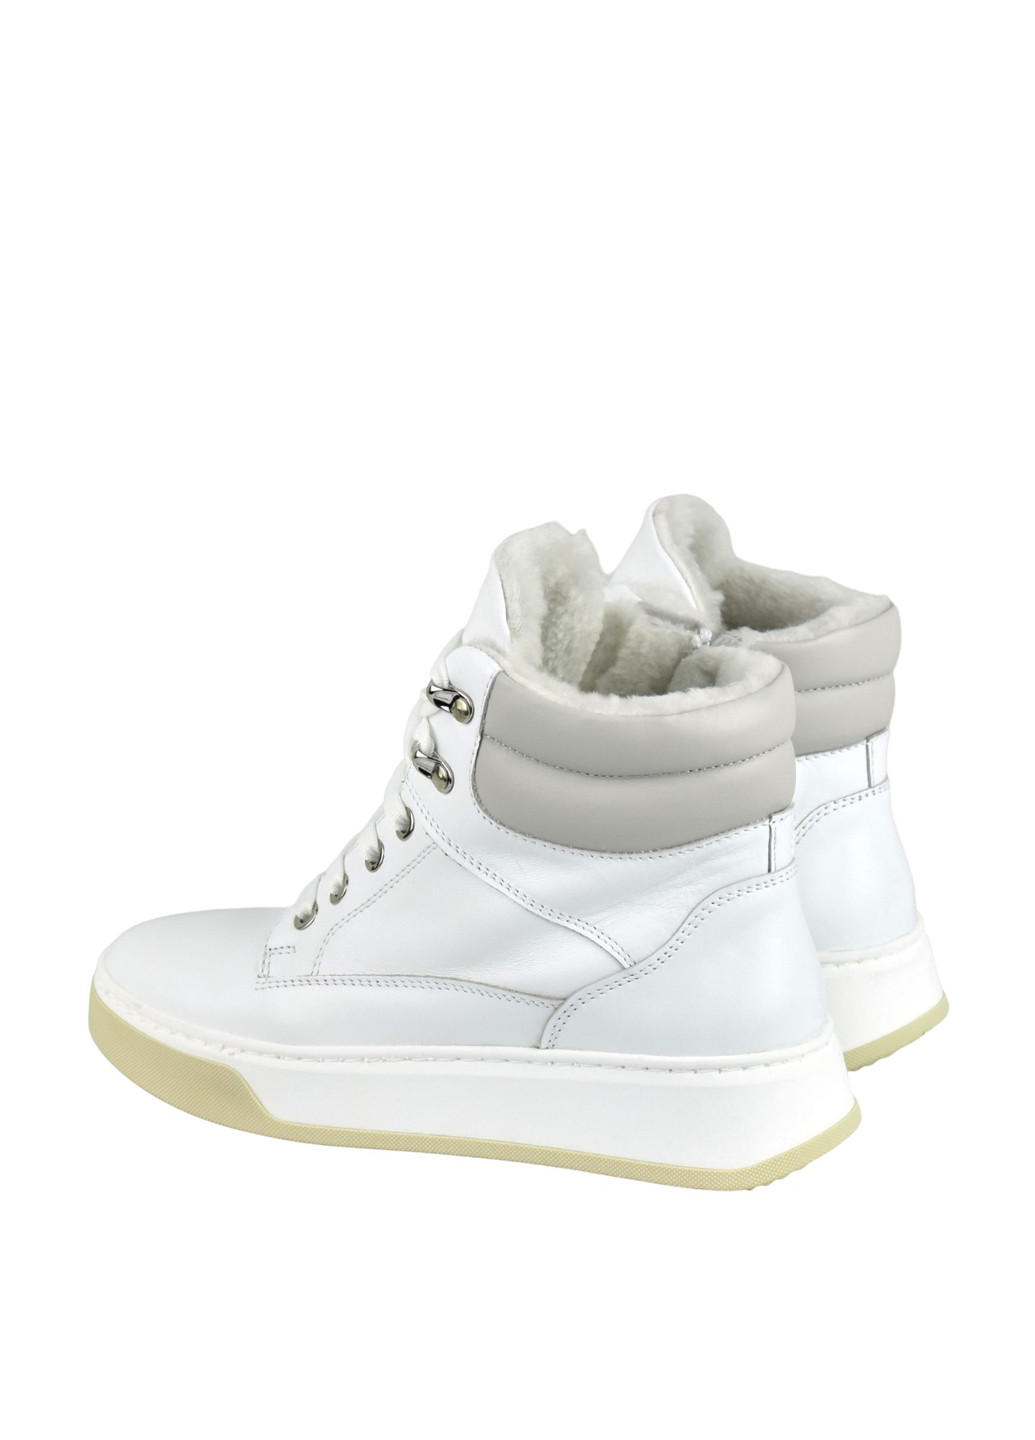 Зимние ботинки сникерсы Blizzarini с белой подошвой